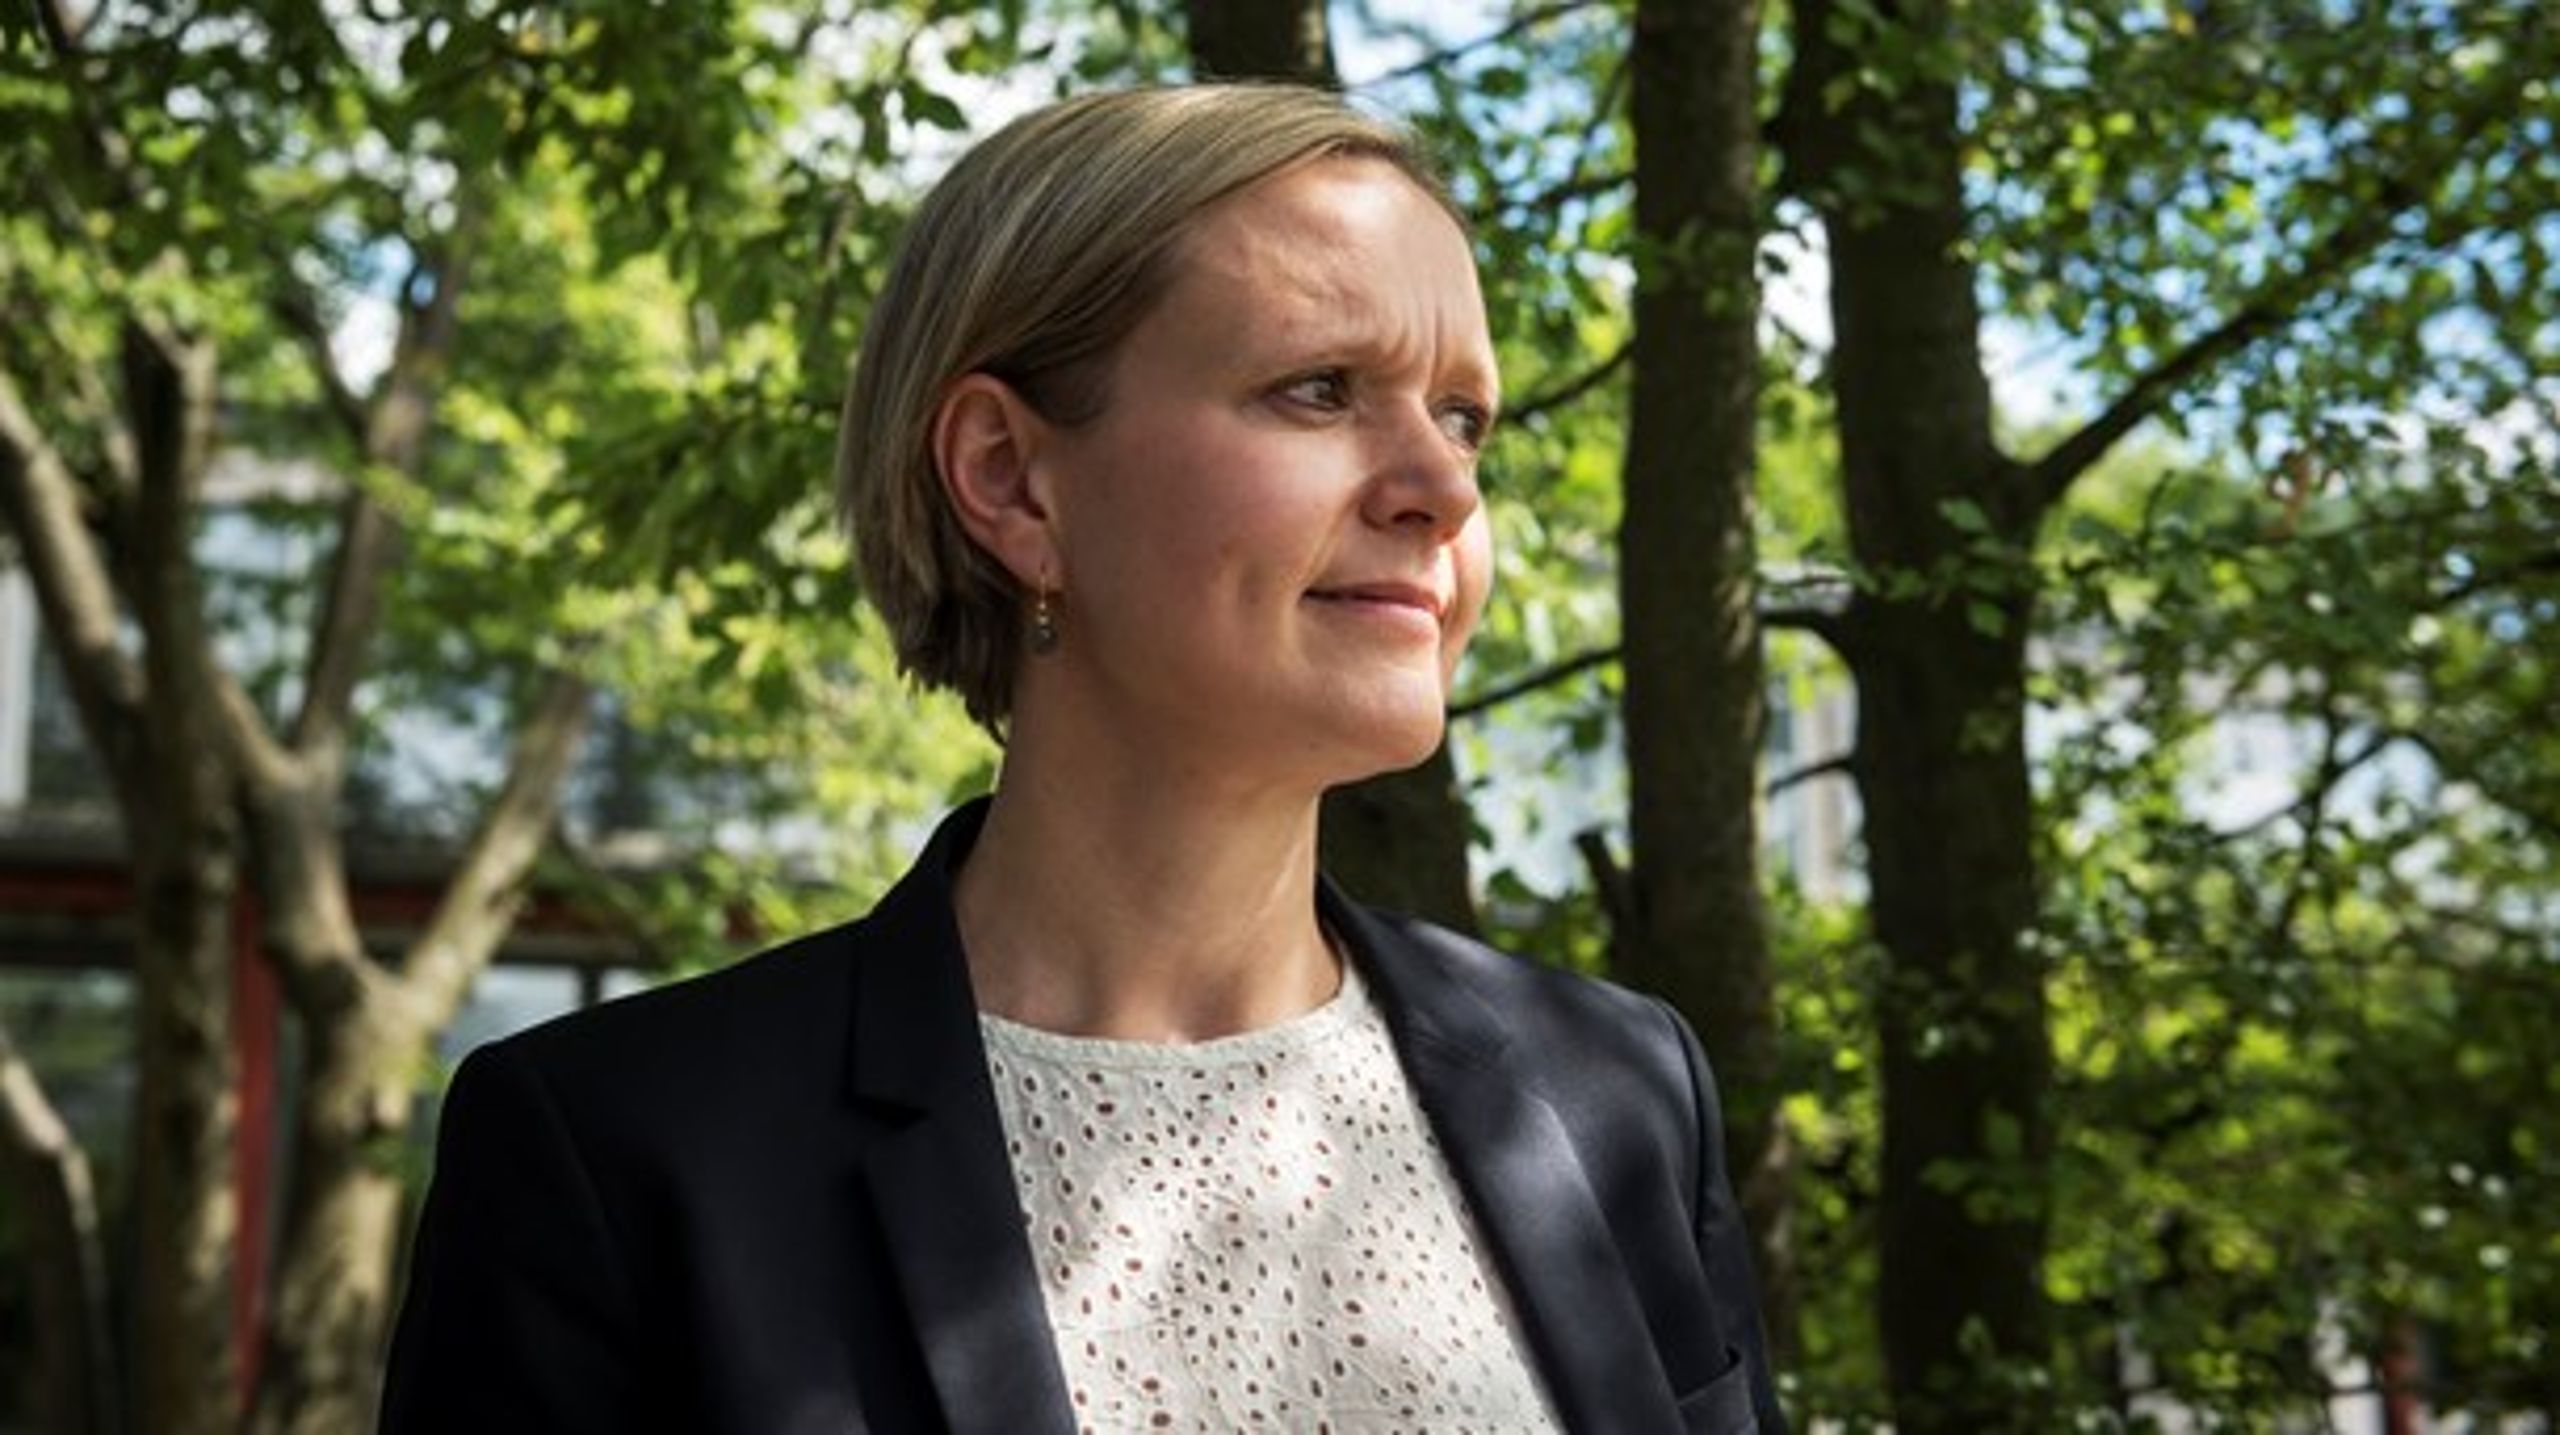 Flere
københavnske virksomheder begynder at tænke&nbsp;i mere klimavenlige baner,
skriver Cecilia Lonning-Skovgaard.&nbsp;